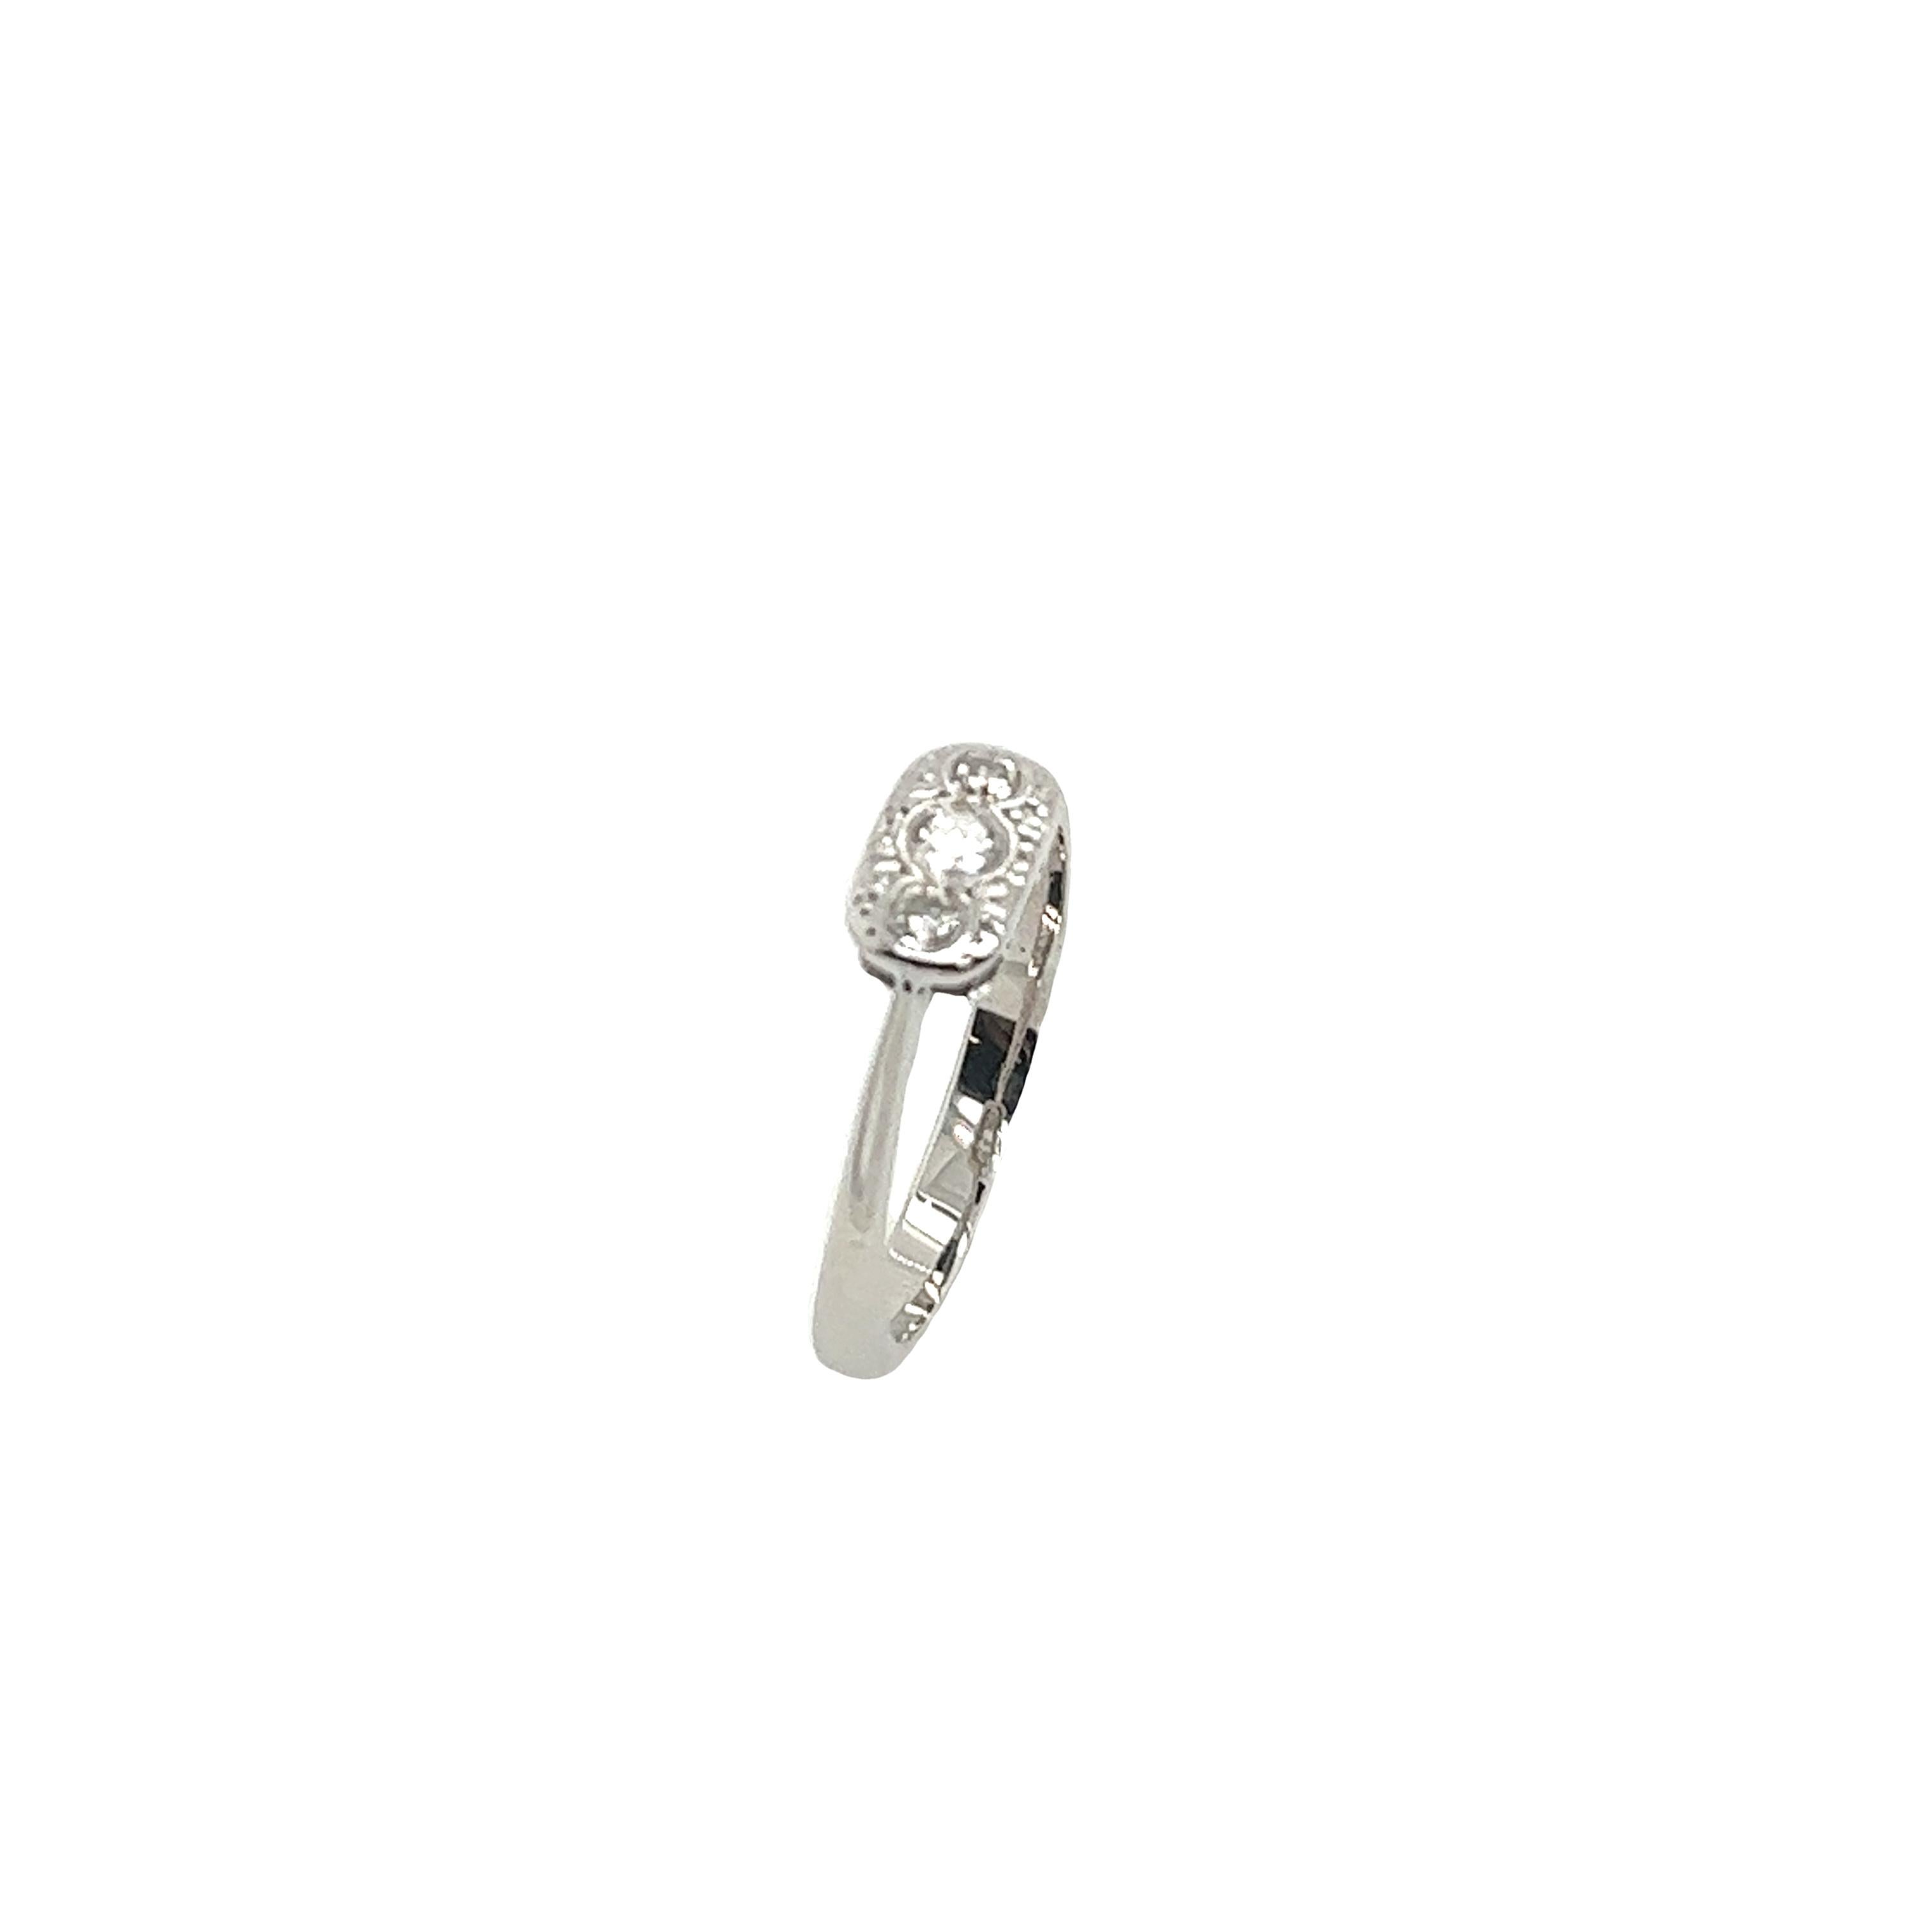 Ein eleganter Diamantring im Vintage-Stil, gebraucht, 
besetzt mit 3 runden natürlichen Diamanten im Altschliff
in Platinfassung.
Gesamtgewicht der Diamanten: 0,10ct
Farbe des Diamanten: H
Diamant Reinheit: SI1
Breite des Bandes: 2.55mm
Breite des